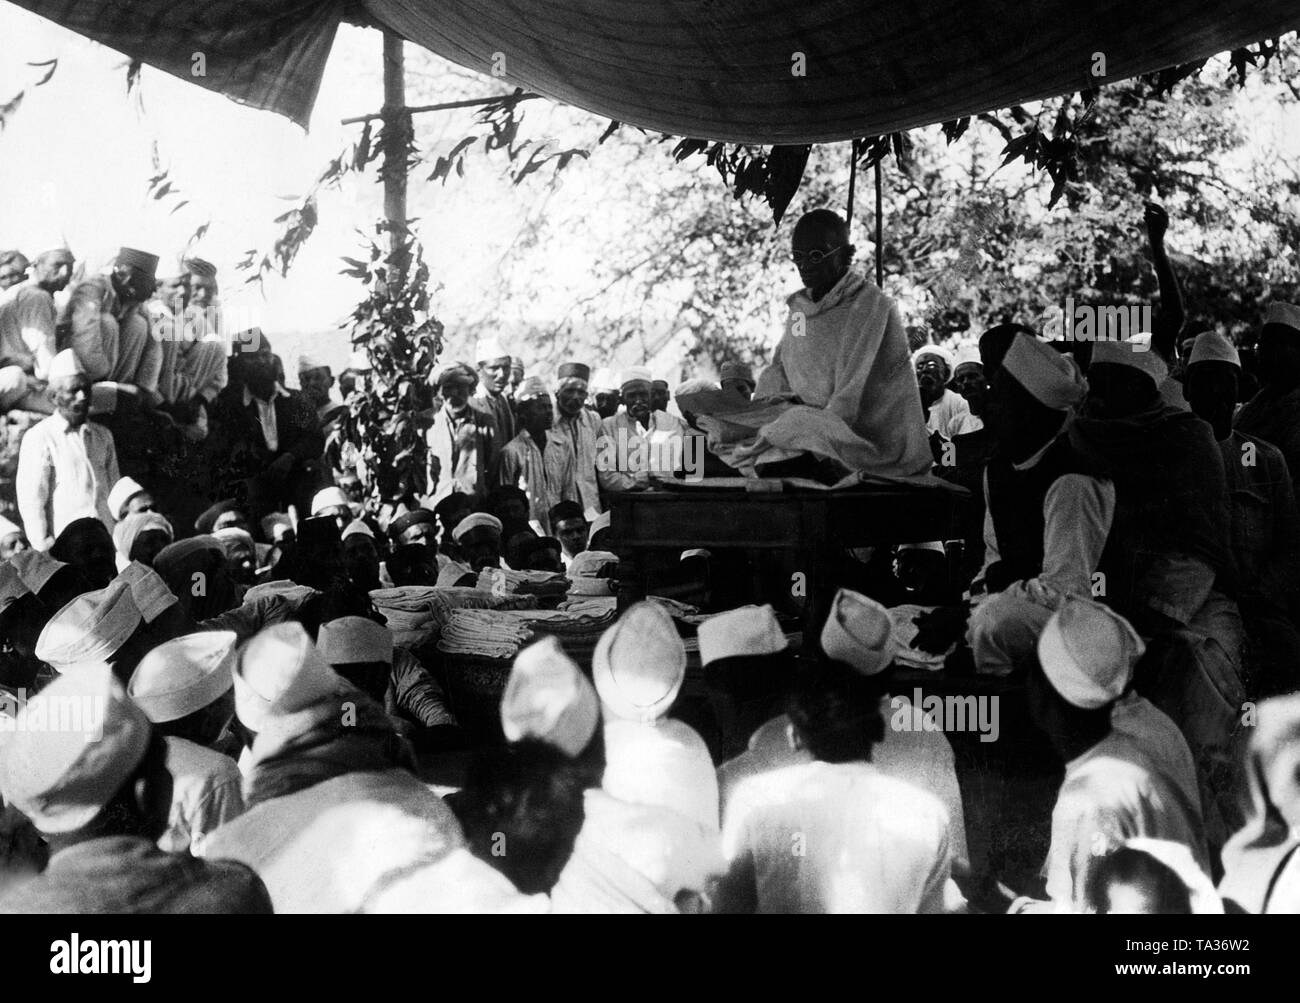 Mahatma Gandhi fait une pause lors de la Salt Marsh, qui a été une campagne de protestation contre la puissance coloniale britannique. L'objectif était de produire eux-mêmes du sel et devient indépendant de la monopole britannique. Cette campagne a été le début de l'indépendance de l'Inde mouvement. Banque D'Images